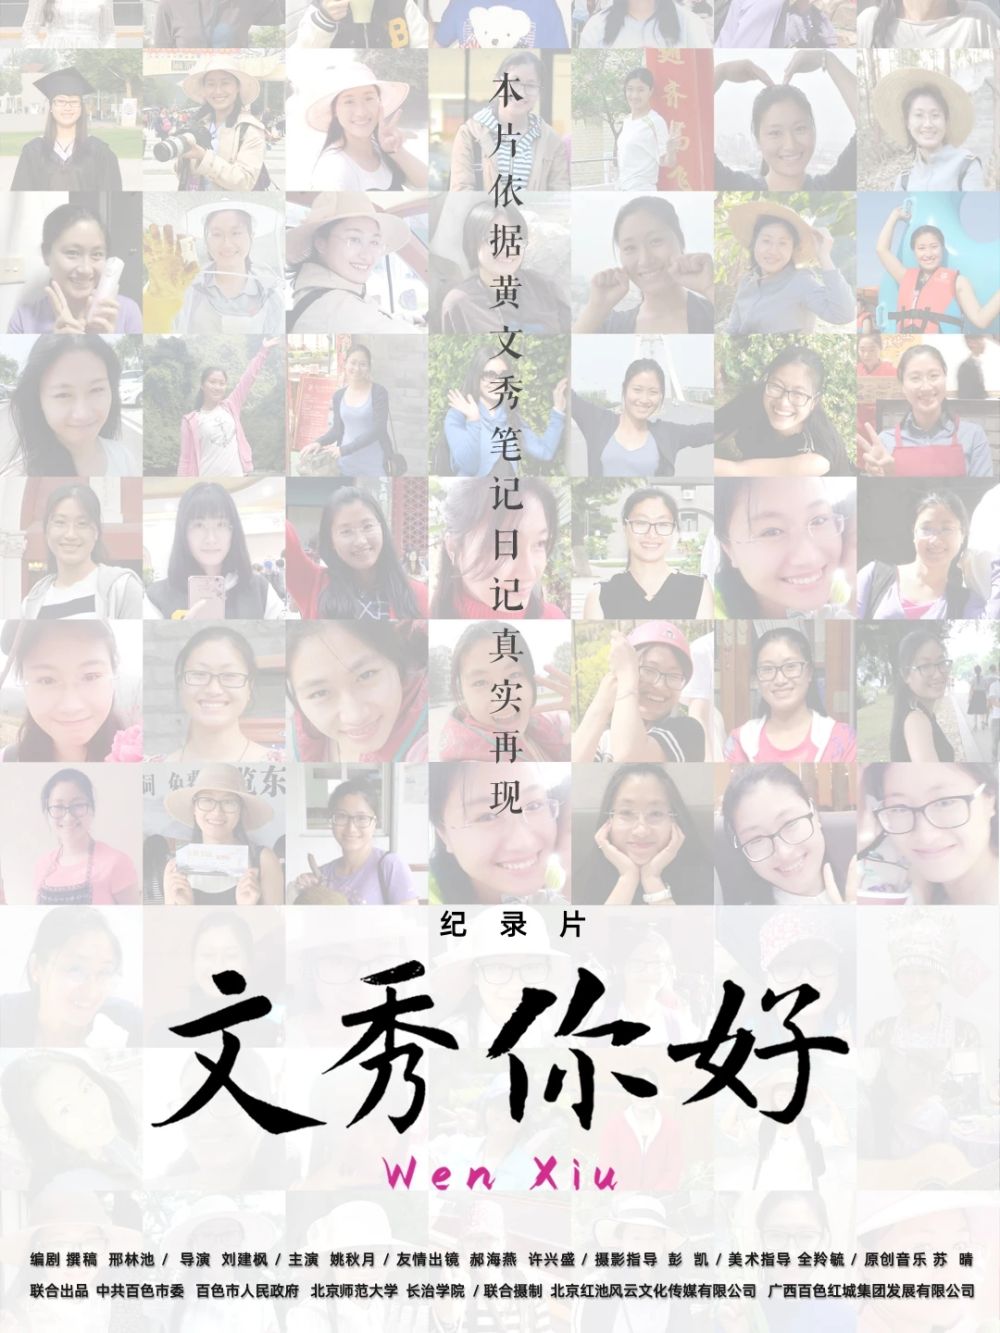 激励学子投身乡村振兴 北京师范大学举办《文秀，你好》点映活动